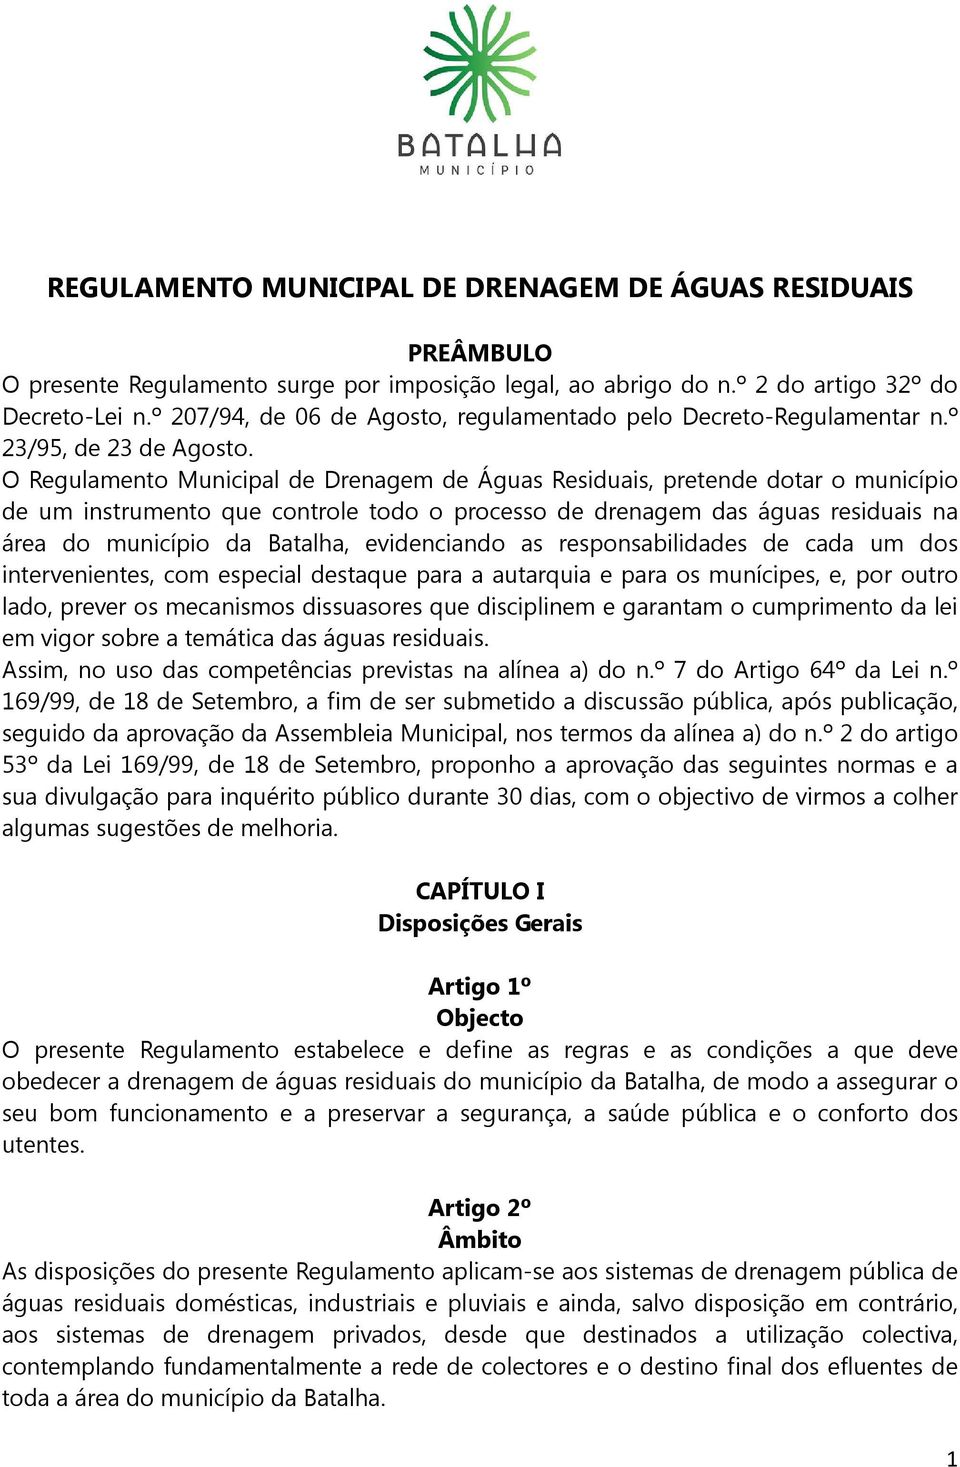 O Regulamento Municipal de Drenagem de Águas Residuais, pretende dotar o município de um instrumento que controle todo o processo de drenagem das águas residuais na área do município da Batalha,